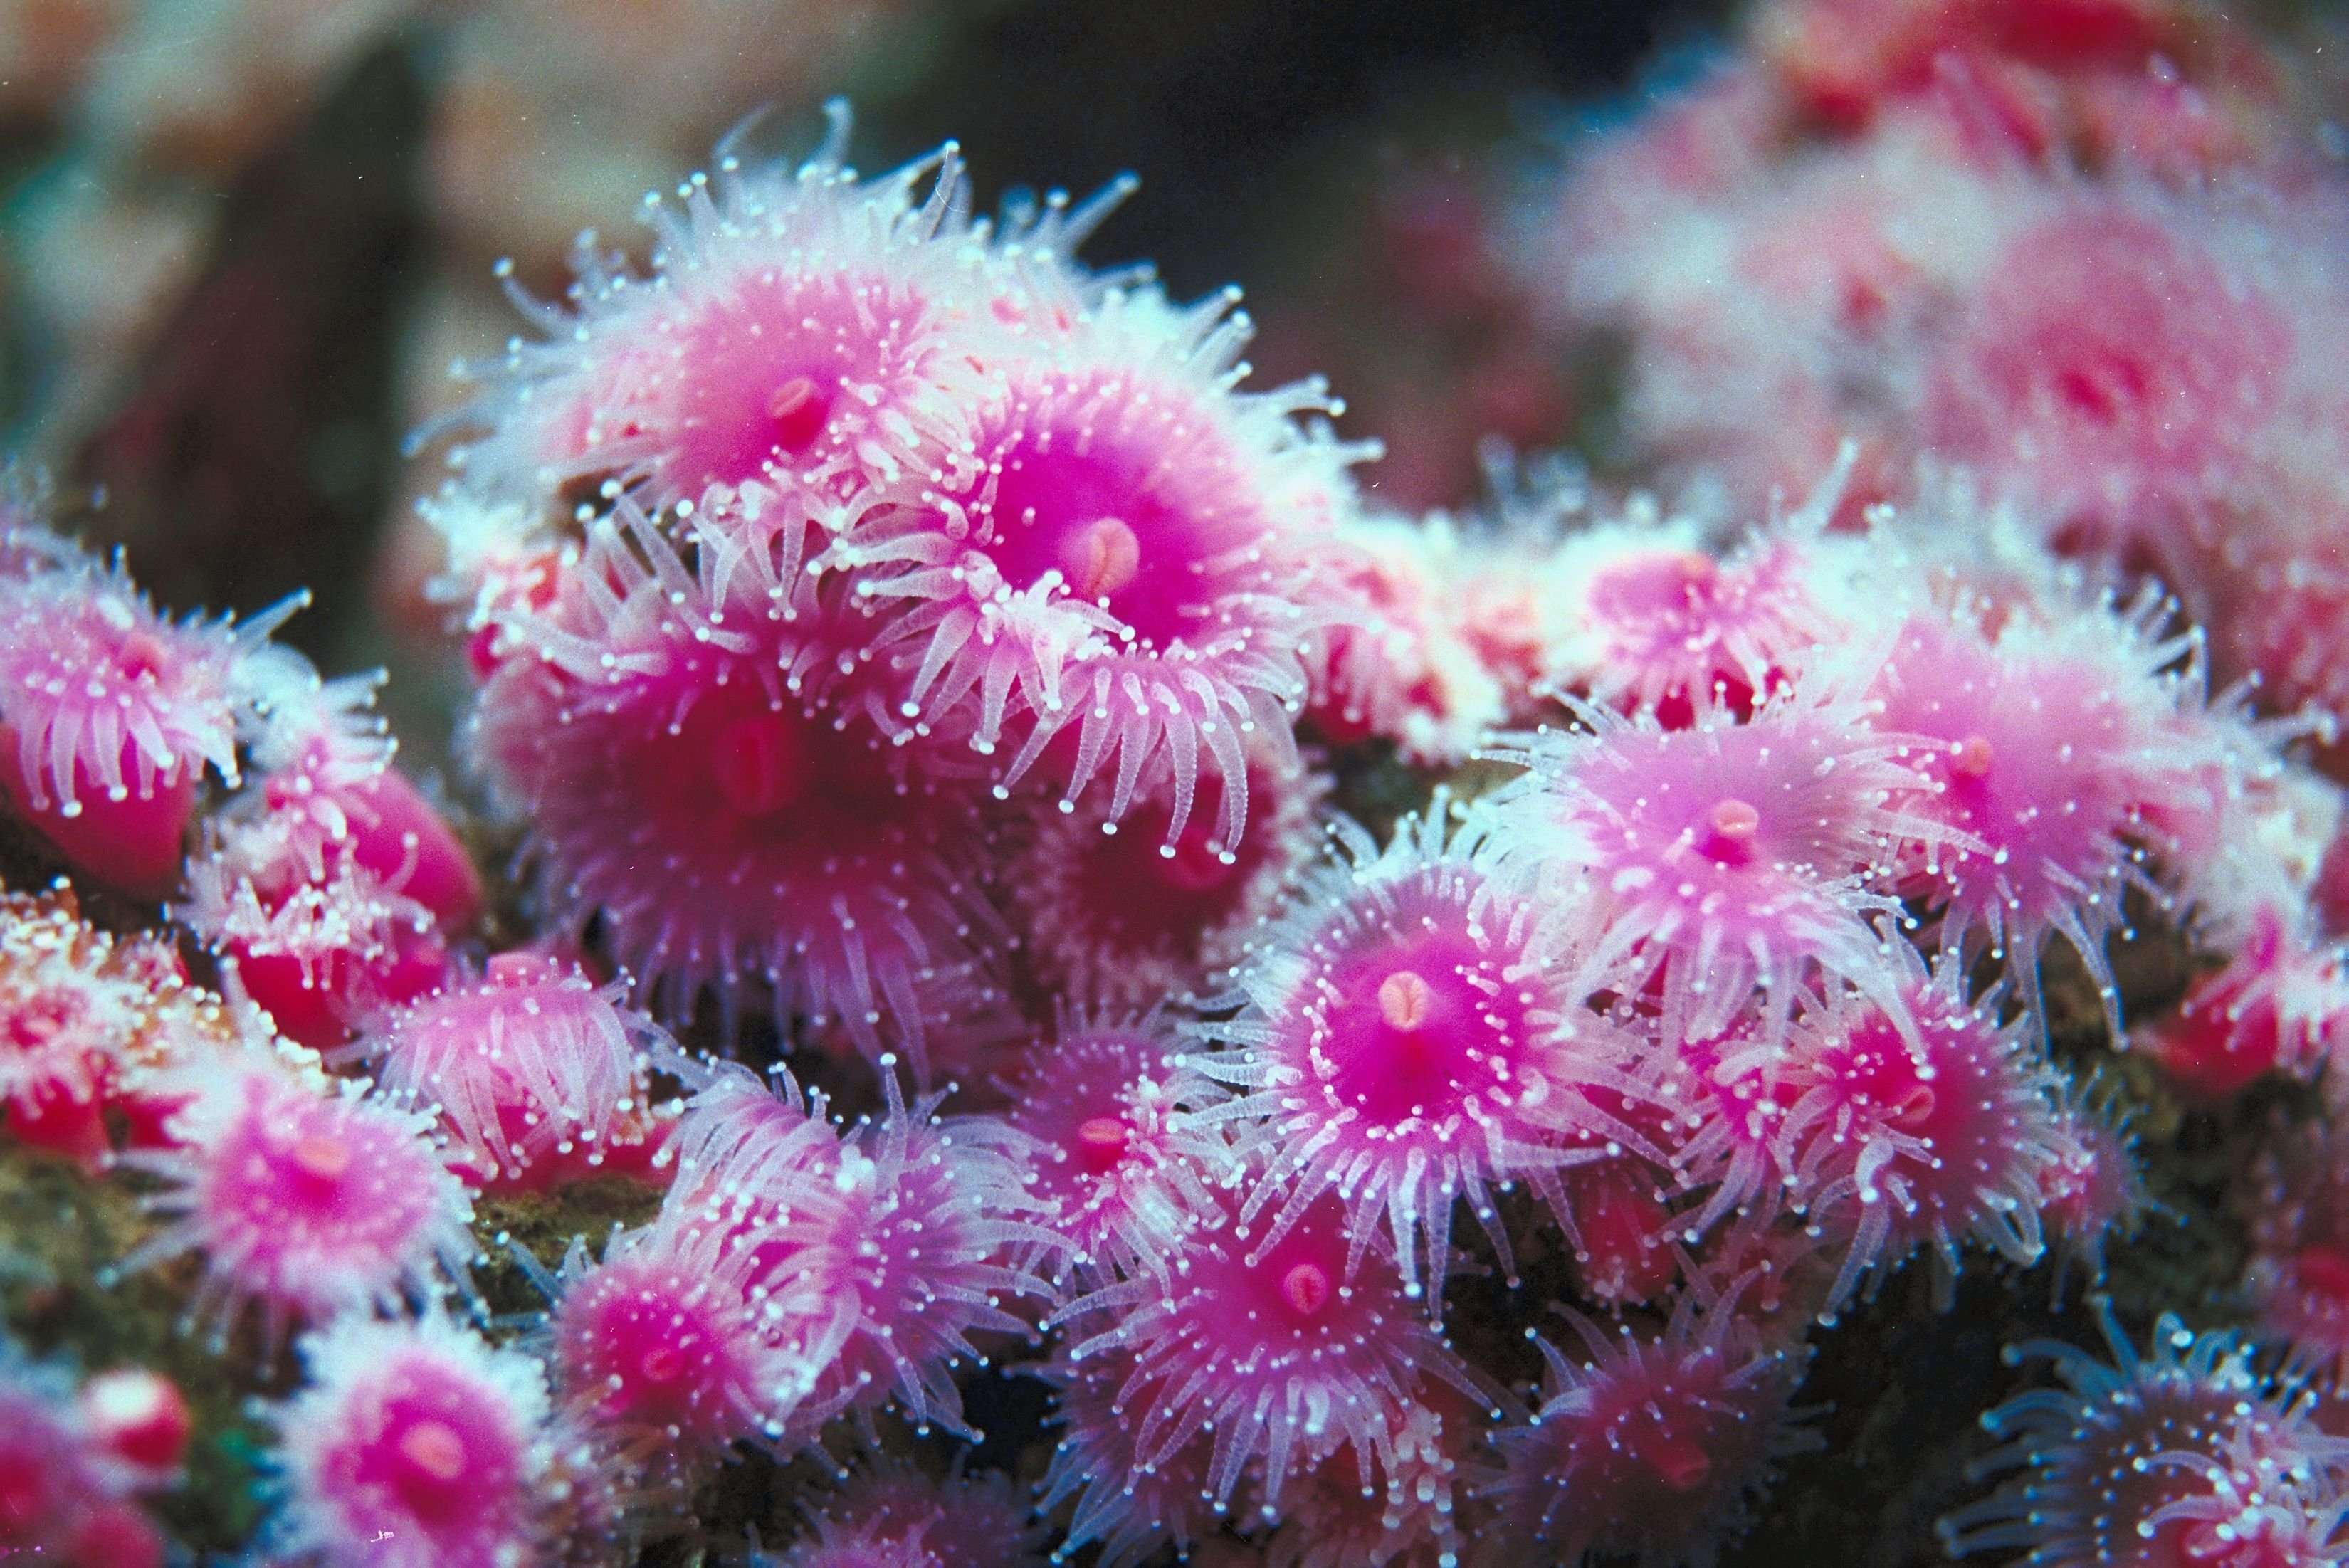 What Do Sea Anemones Eat
